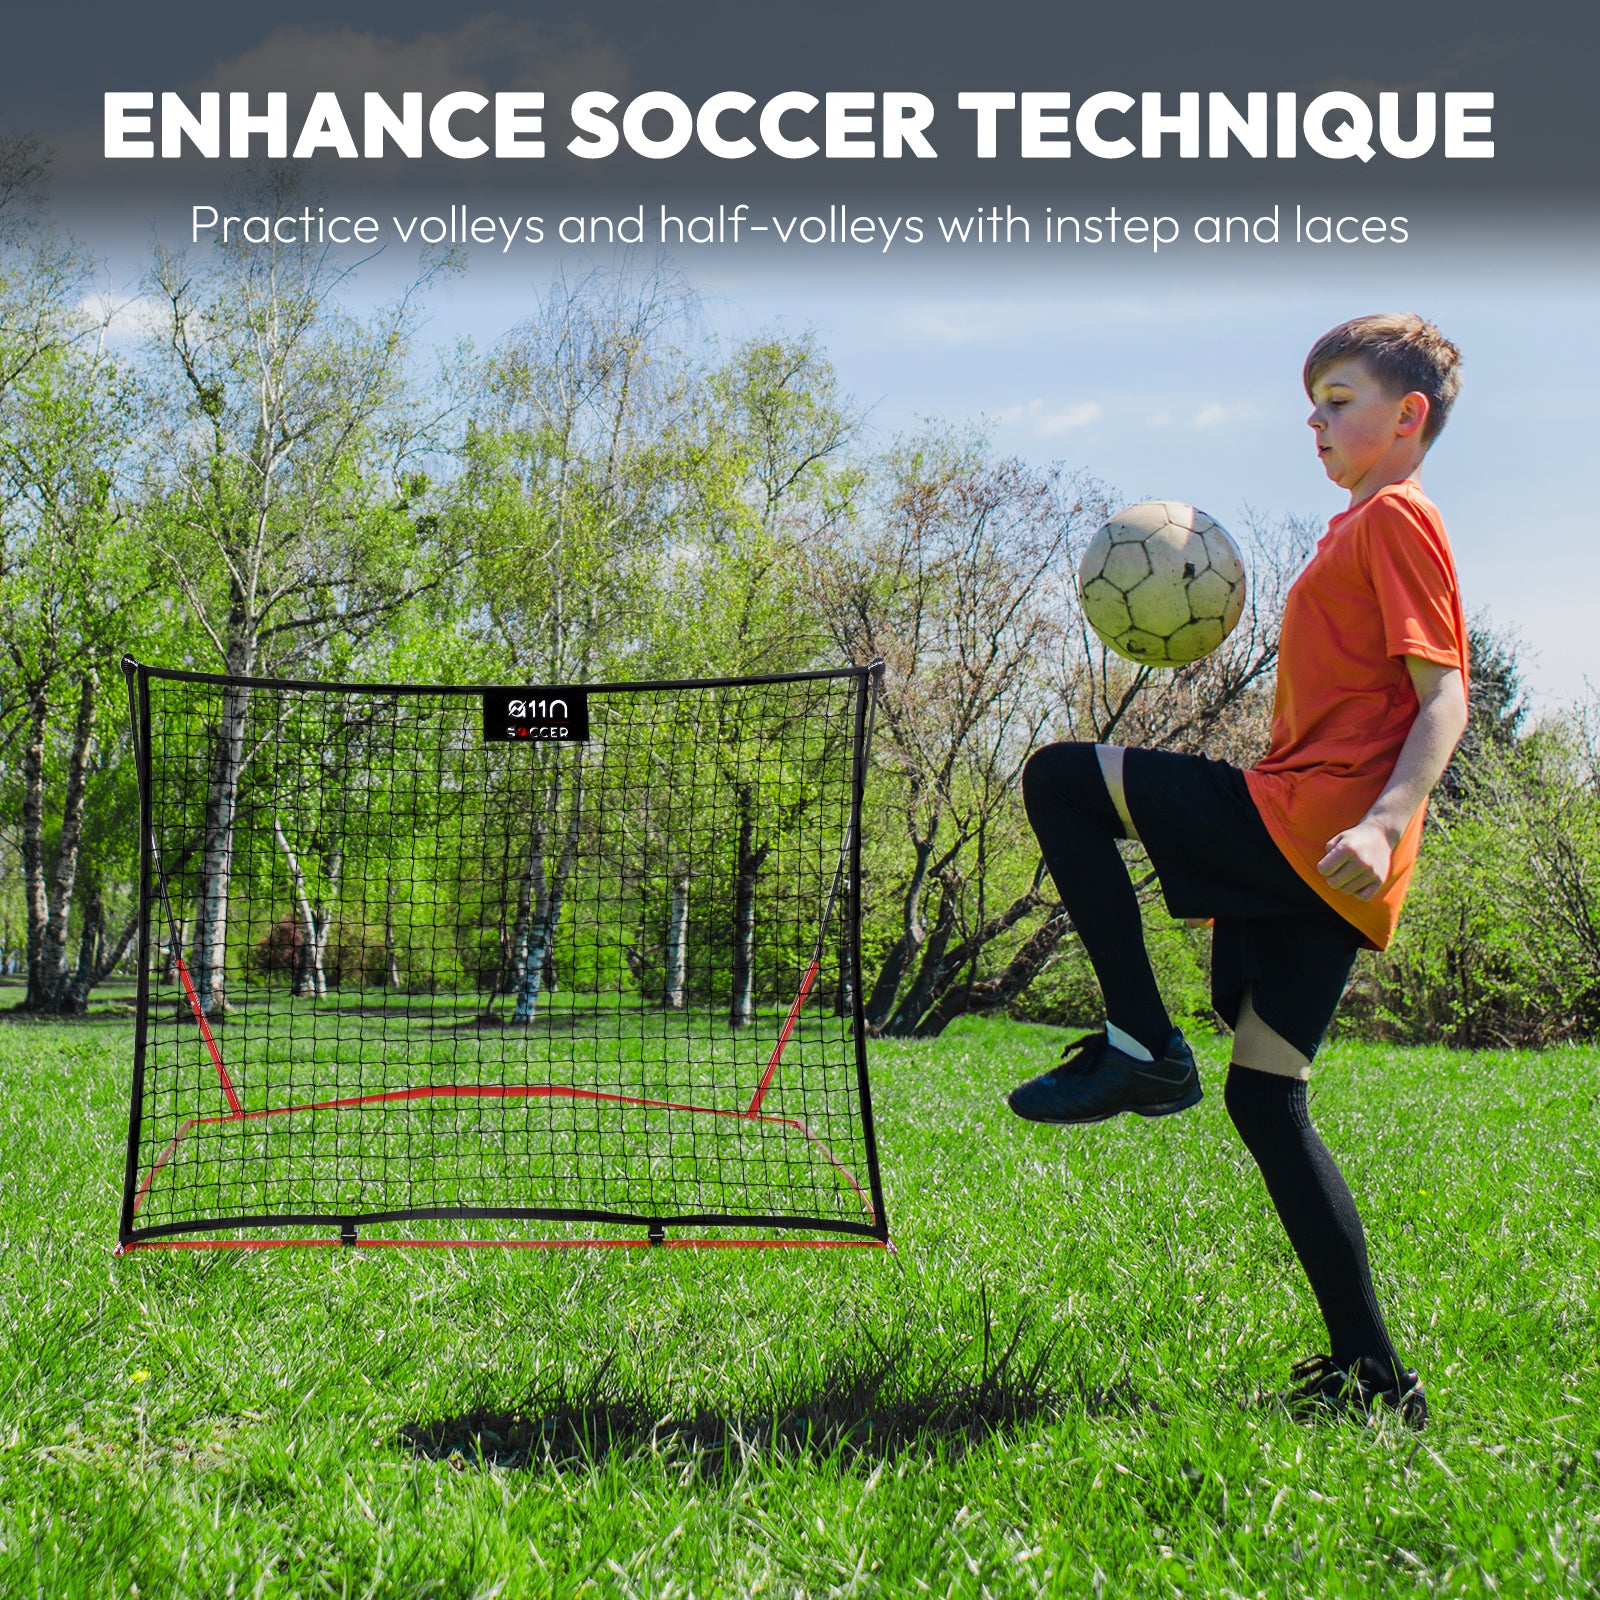 5ft x 4ft Portable Soccer Rebounder